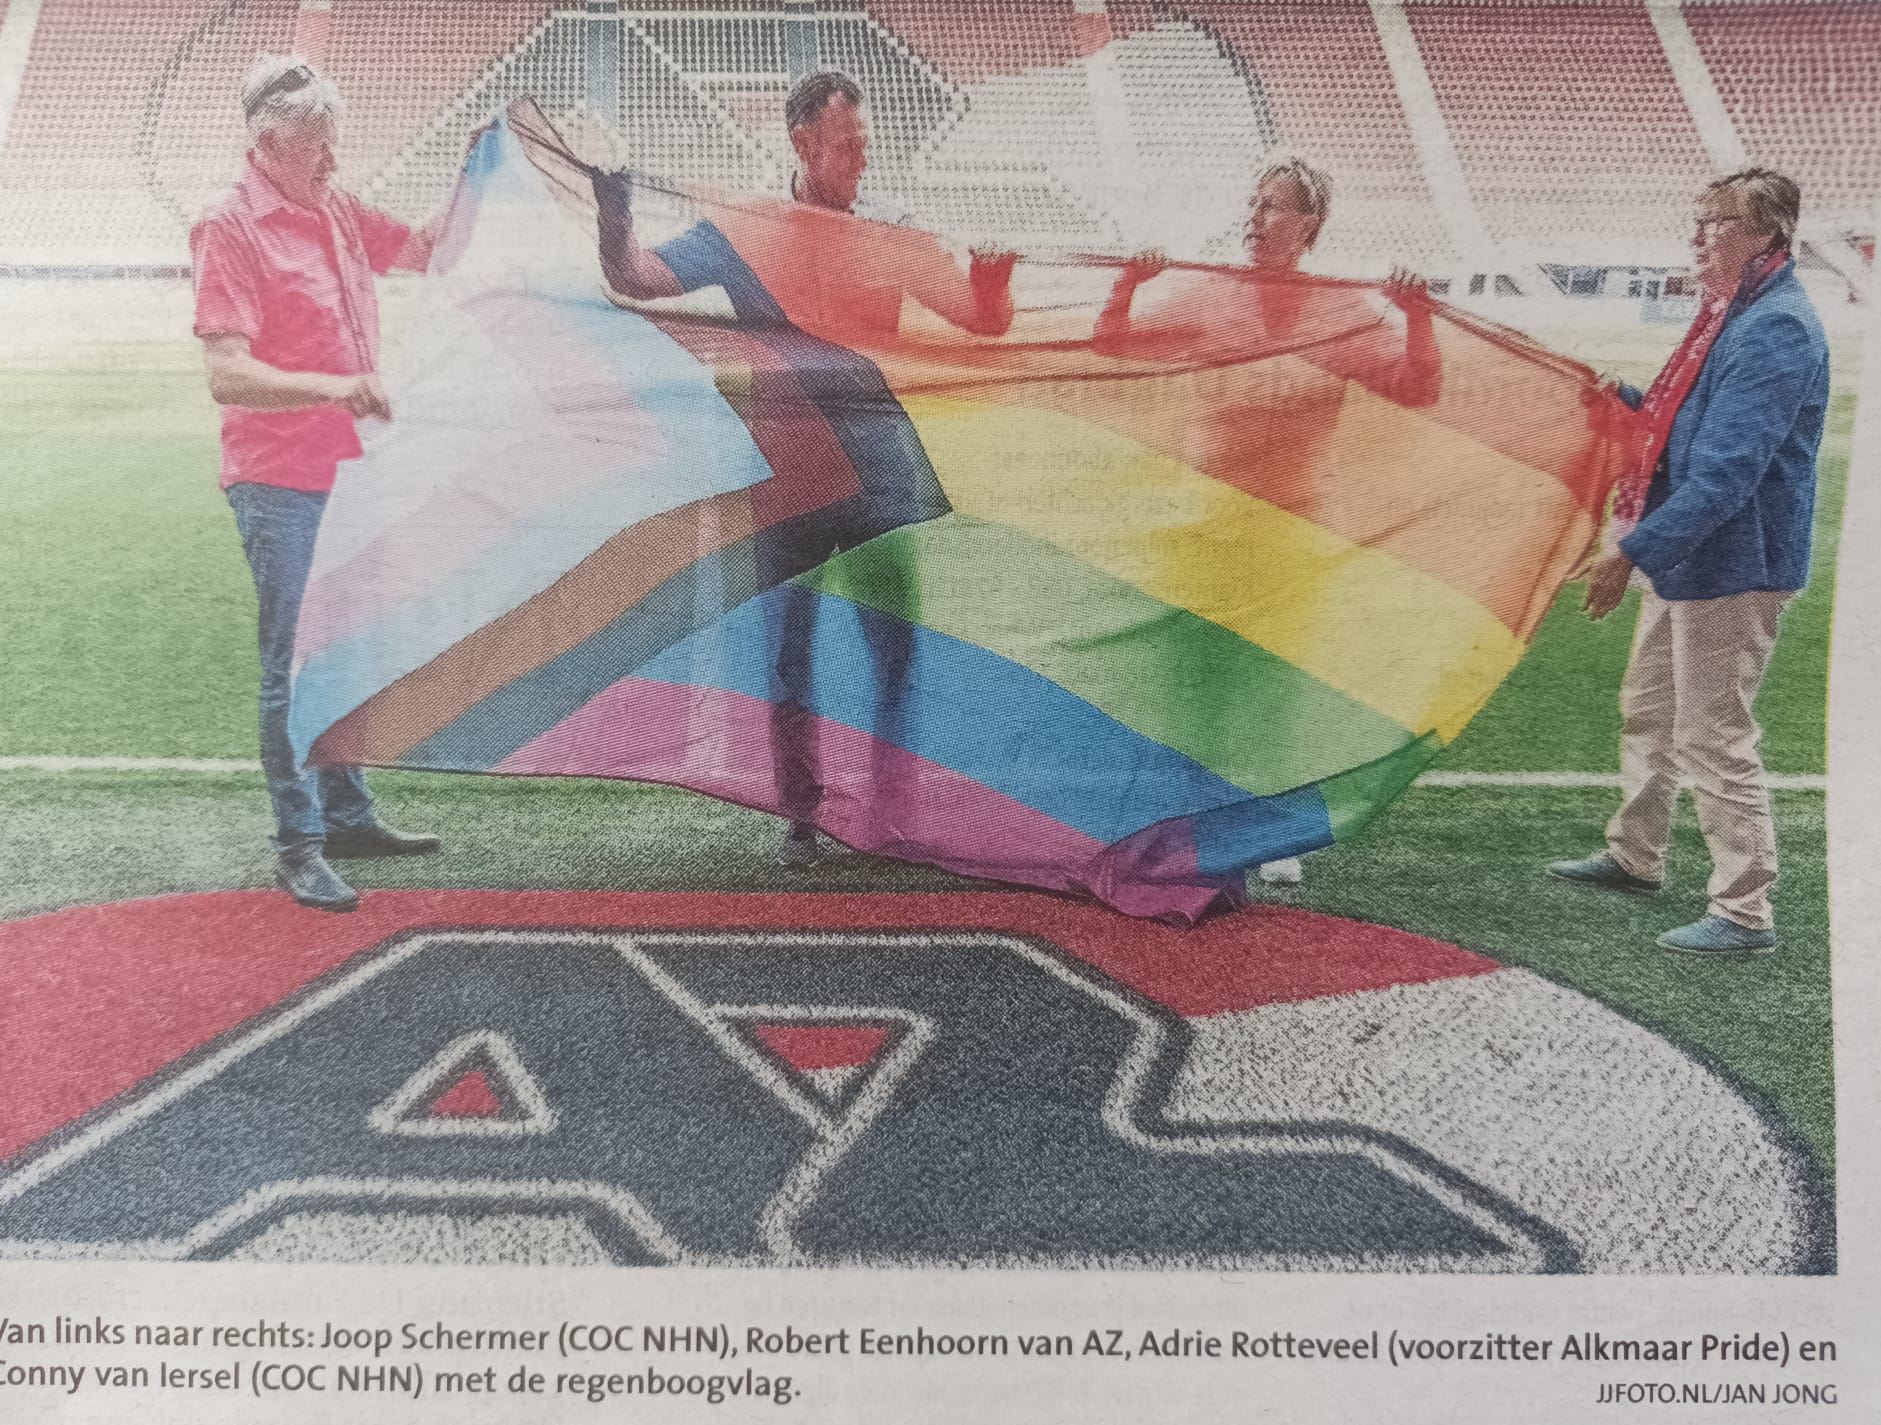 Als eerste eredivisie club hijst AZ de regenboogvlag